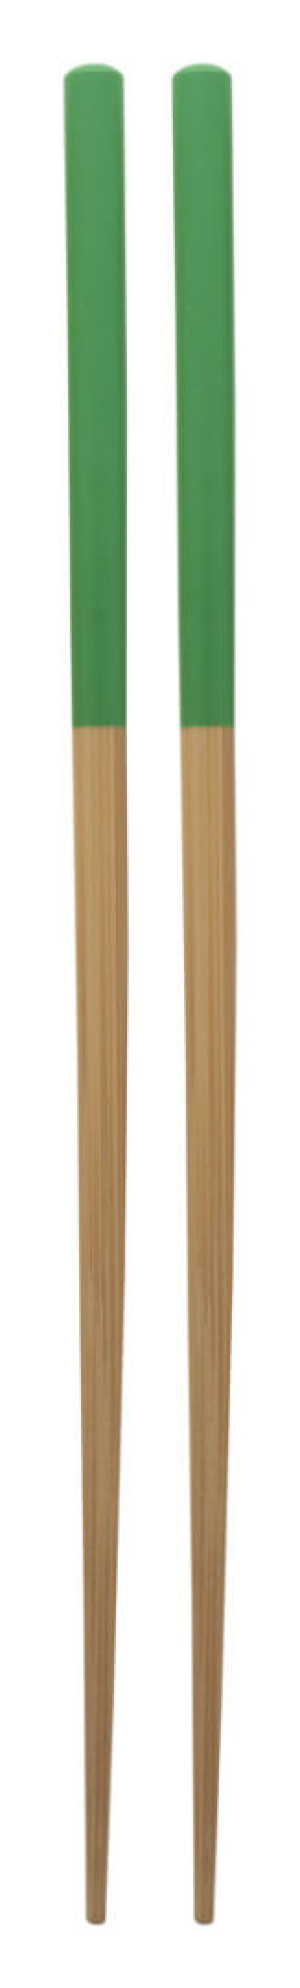 Bambusové paličky Sinicus